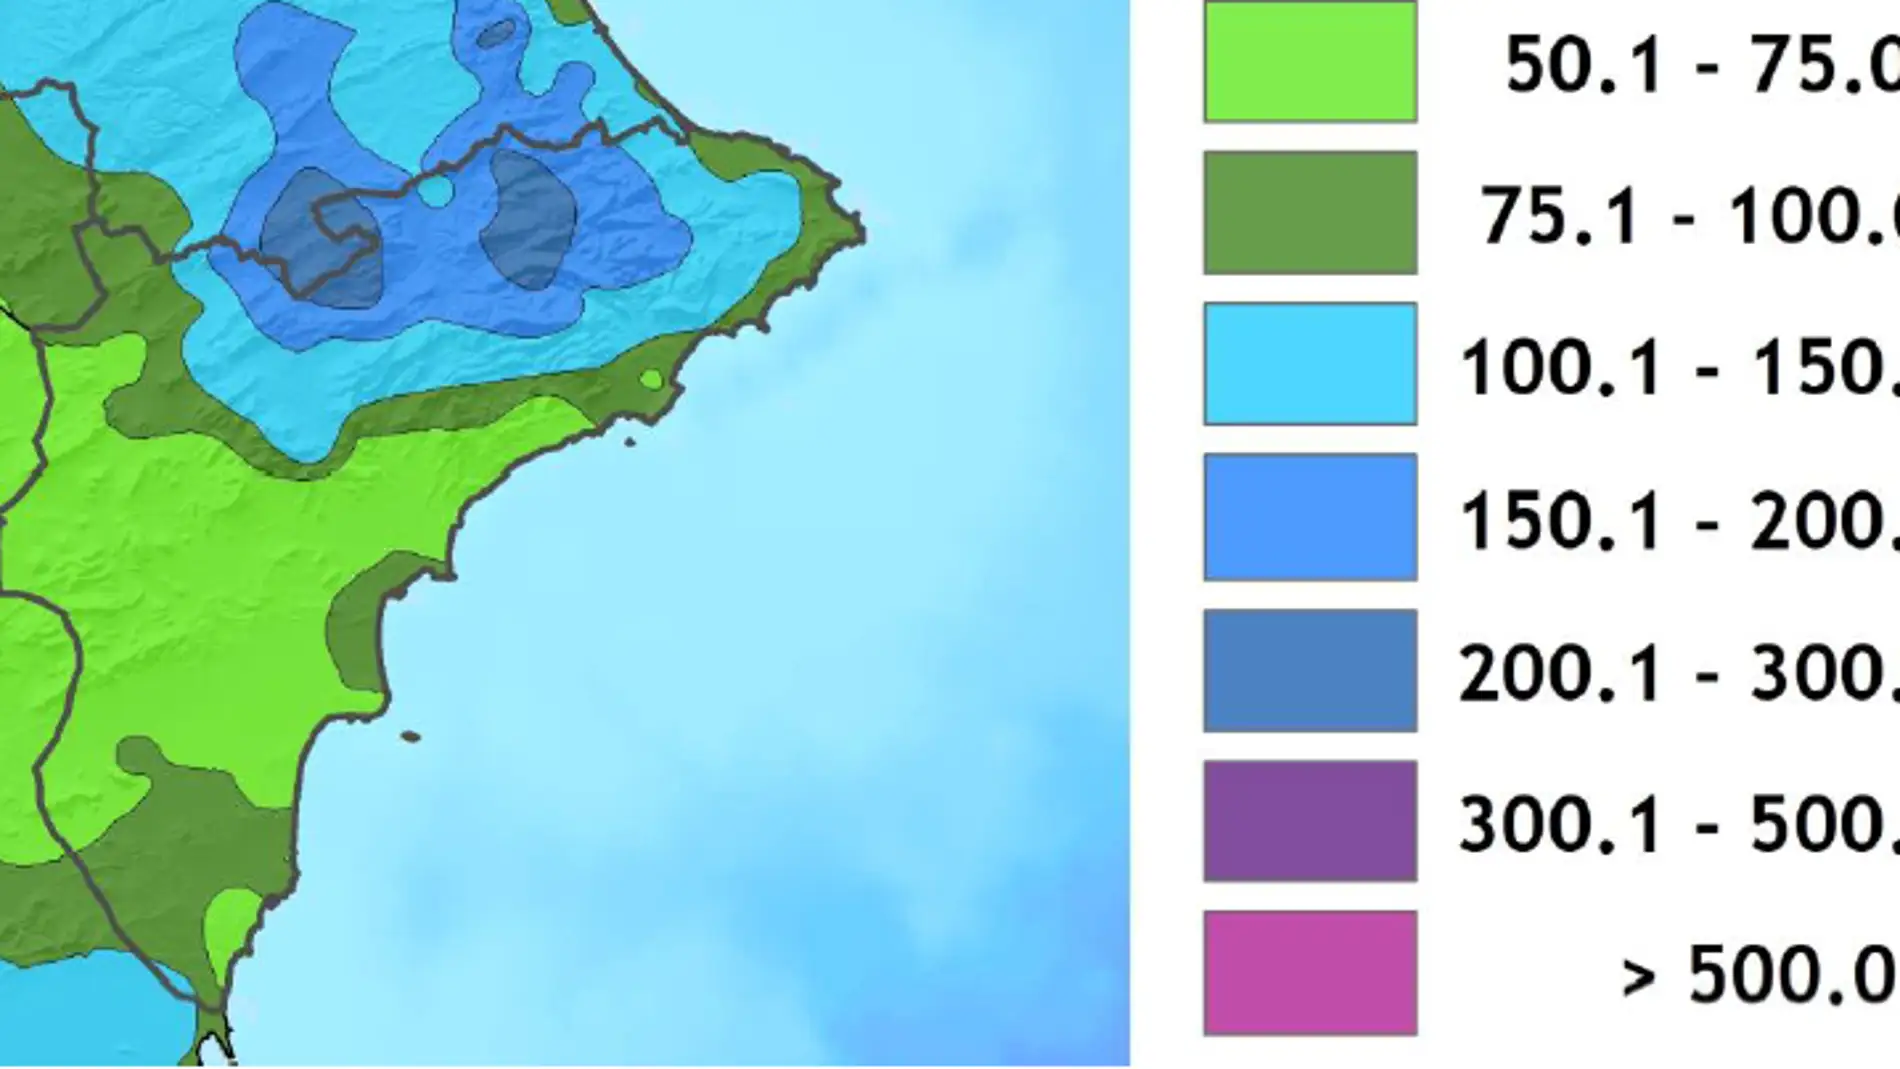 Dato de precipitación en abril en la provincia de Alicante en litros por metro cuadrado